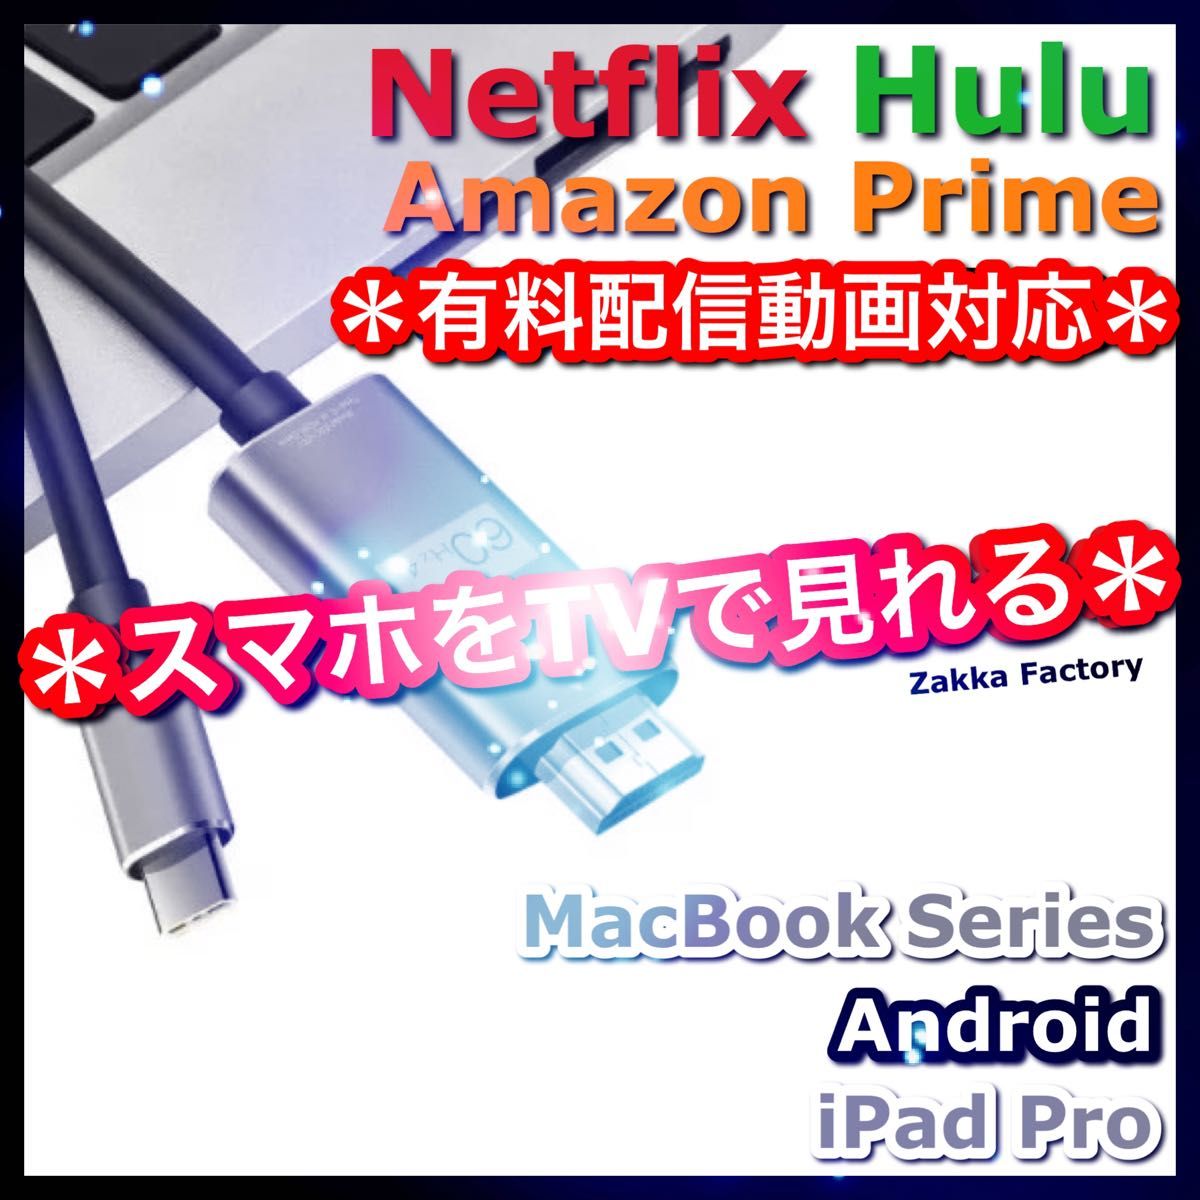 タイプC 変換 HDMI ケーブル GALAXY iPadPro iPhone15 スマホ テレビ 接続 Netflix 対応